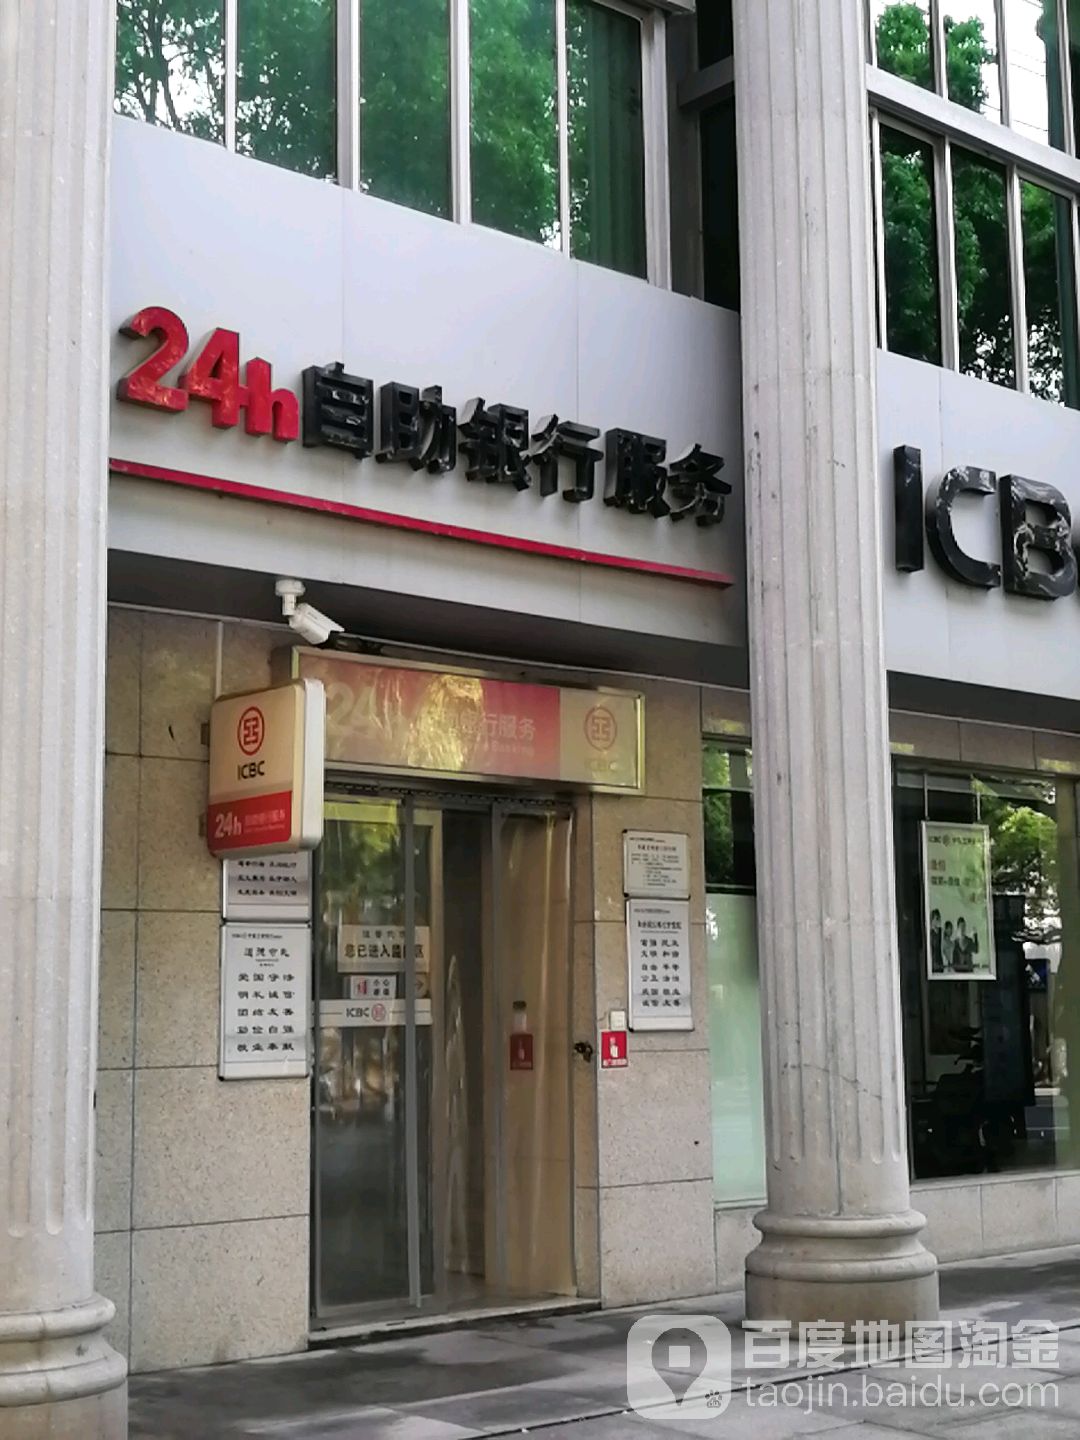 中国工商银行24小时自助银行(岳阳德胜路支行)